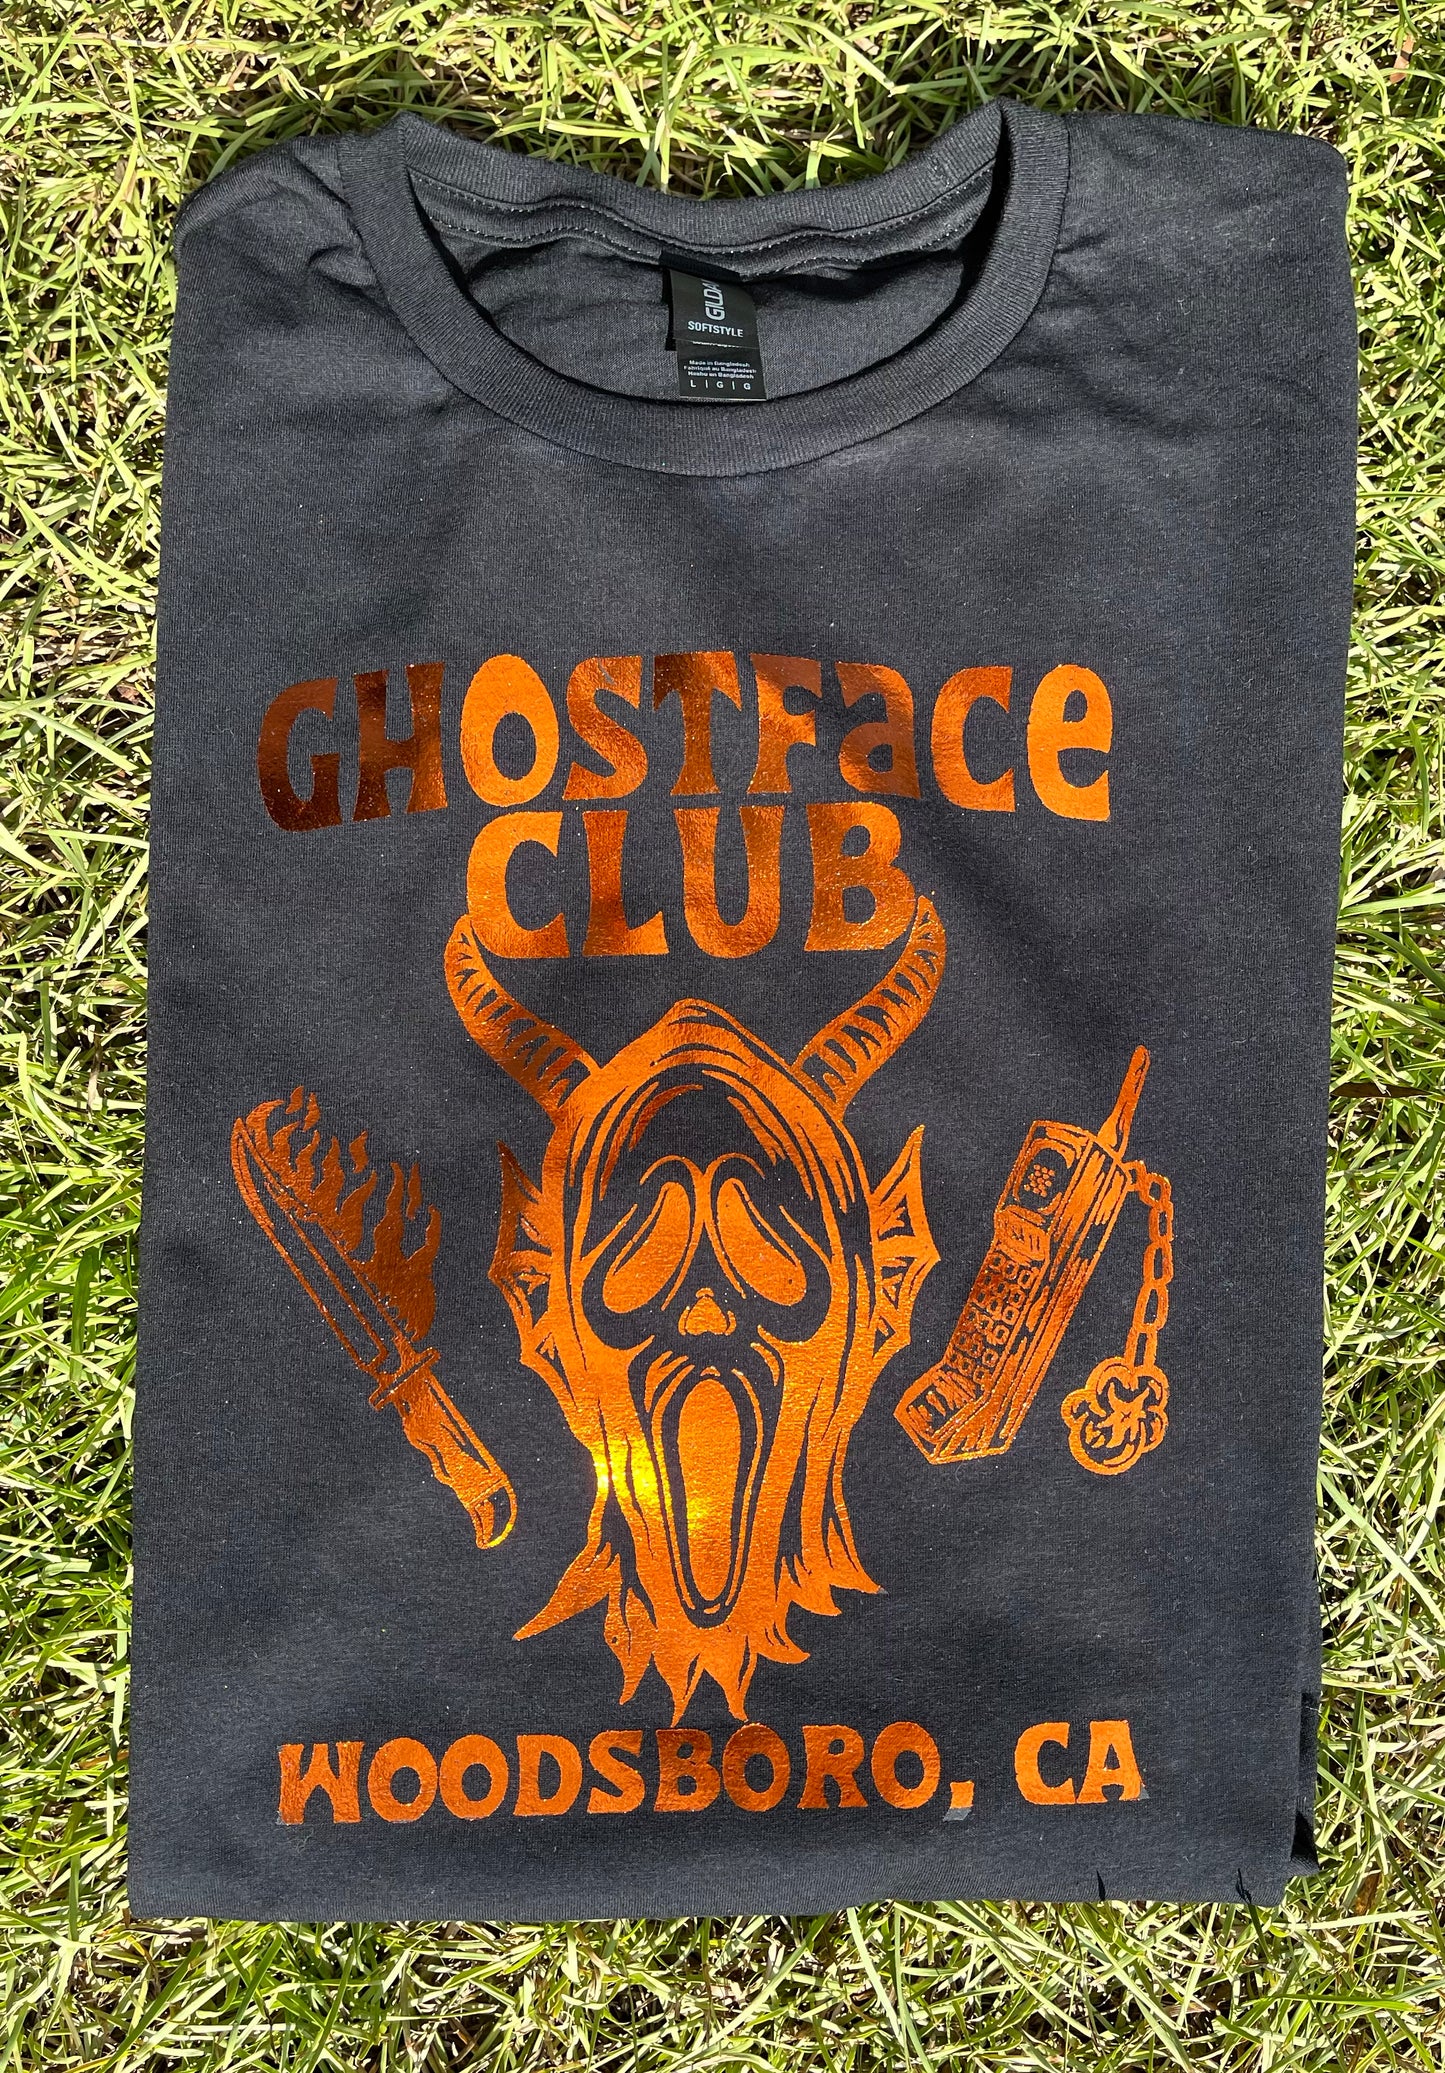 Ghostface Club Foil